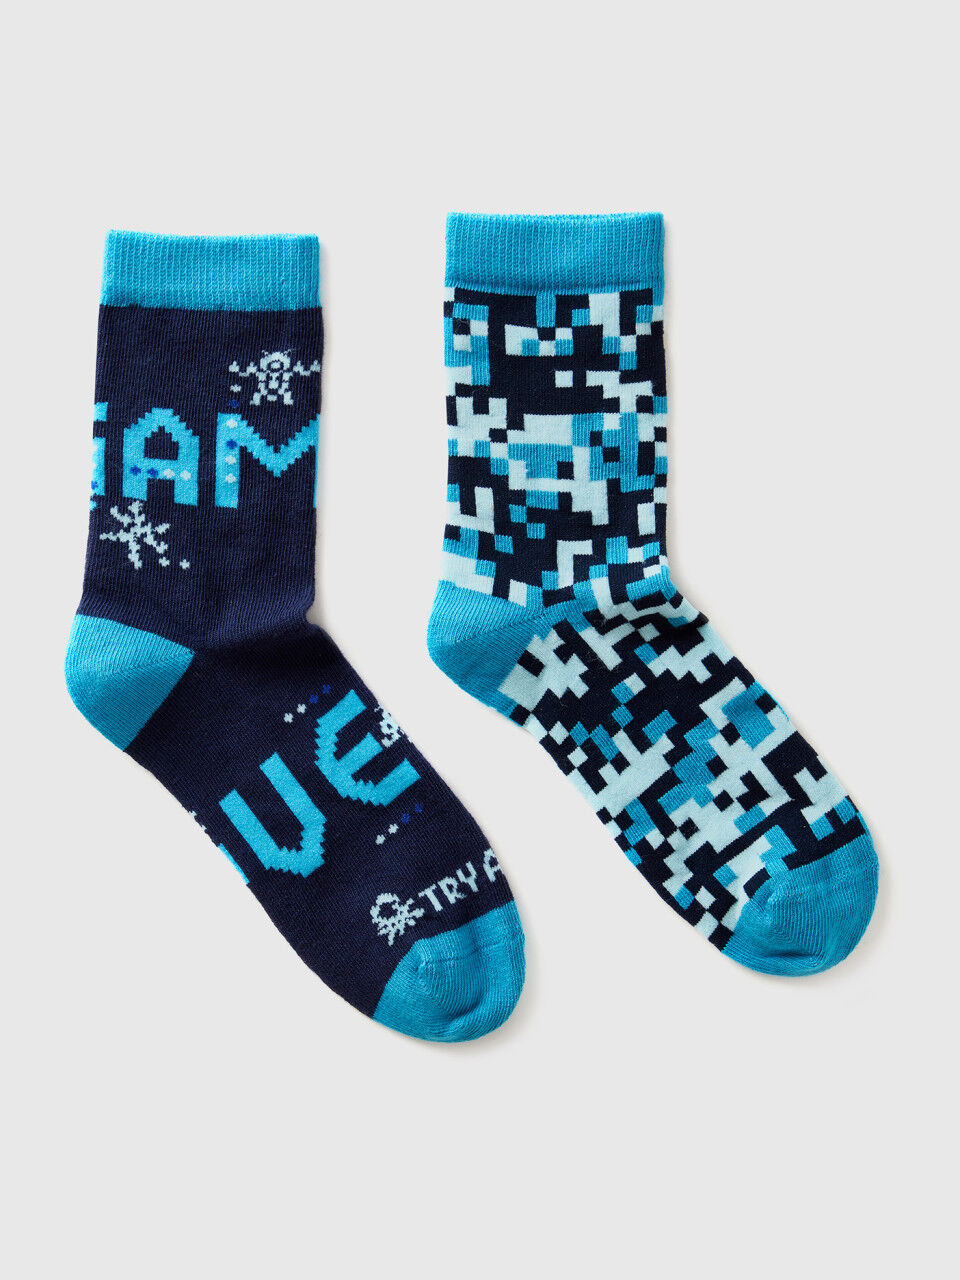 Mix & match patterned socks